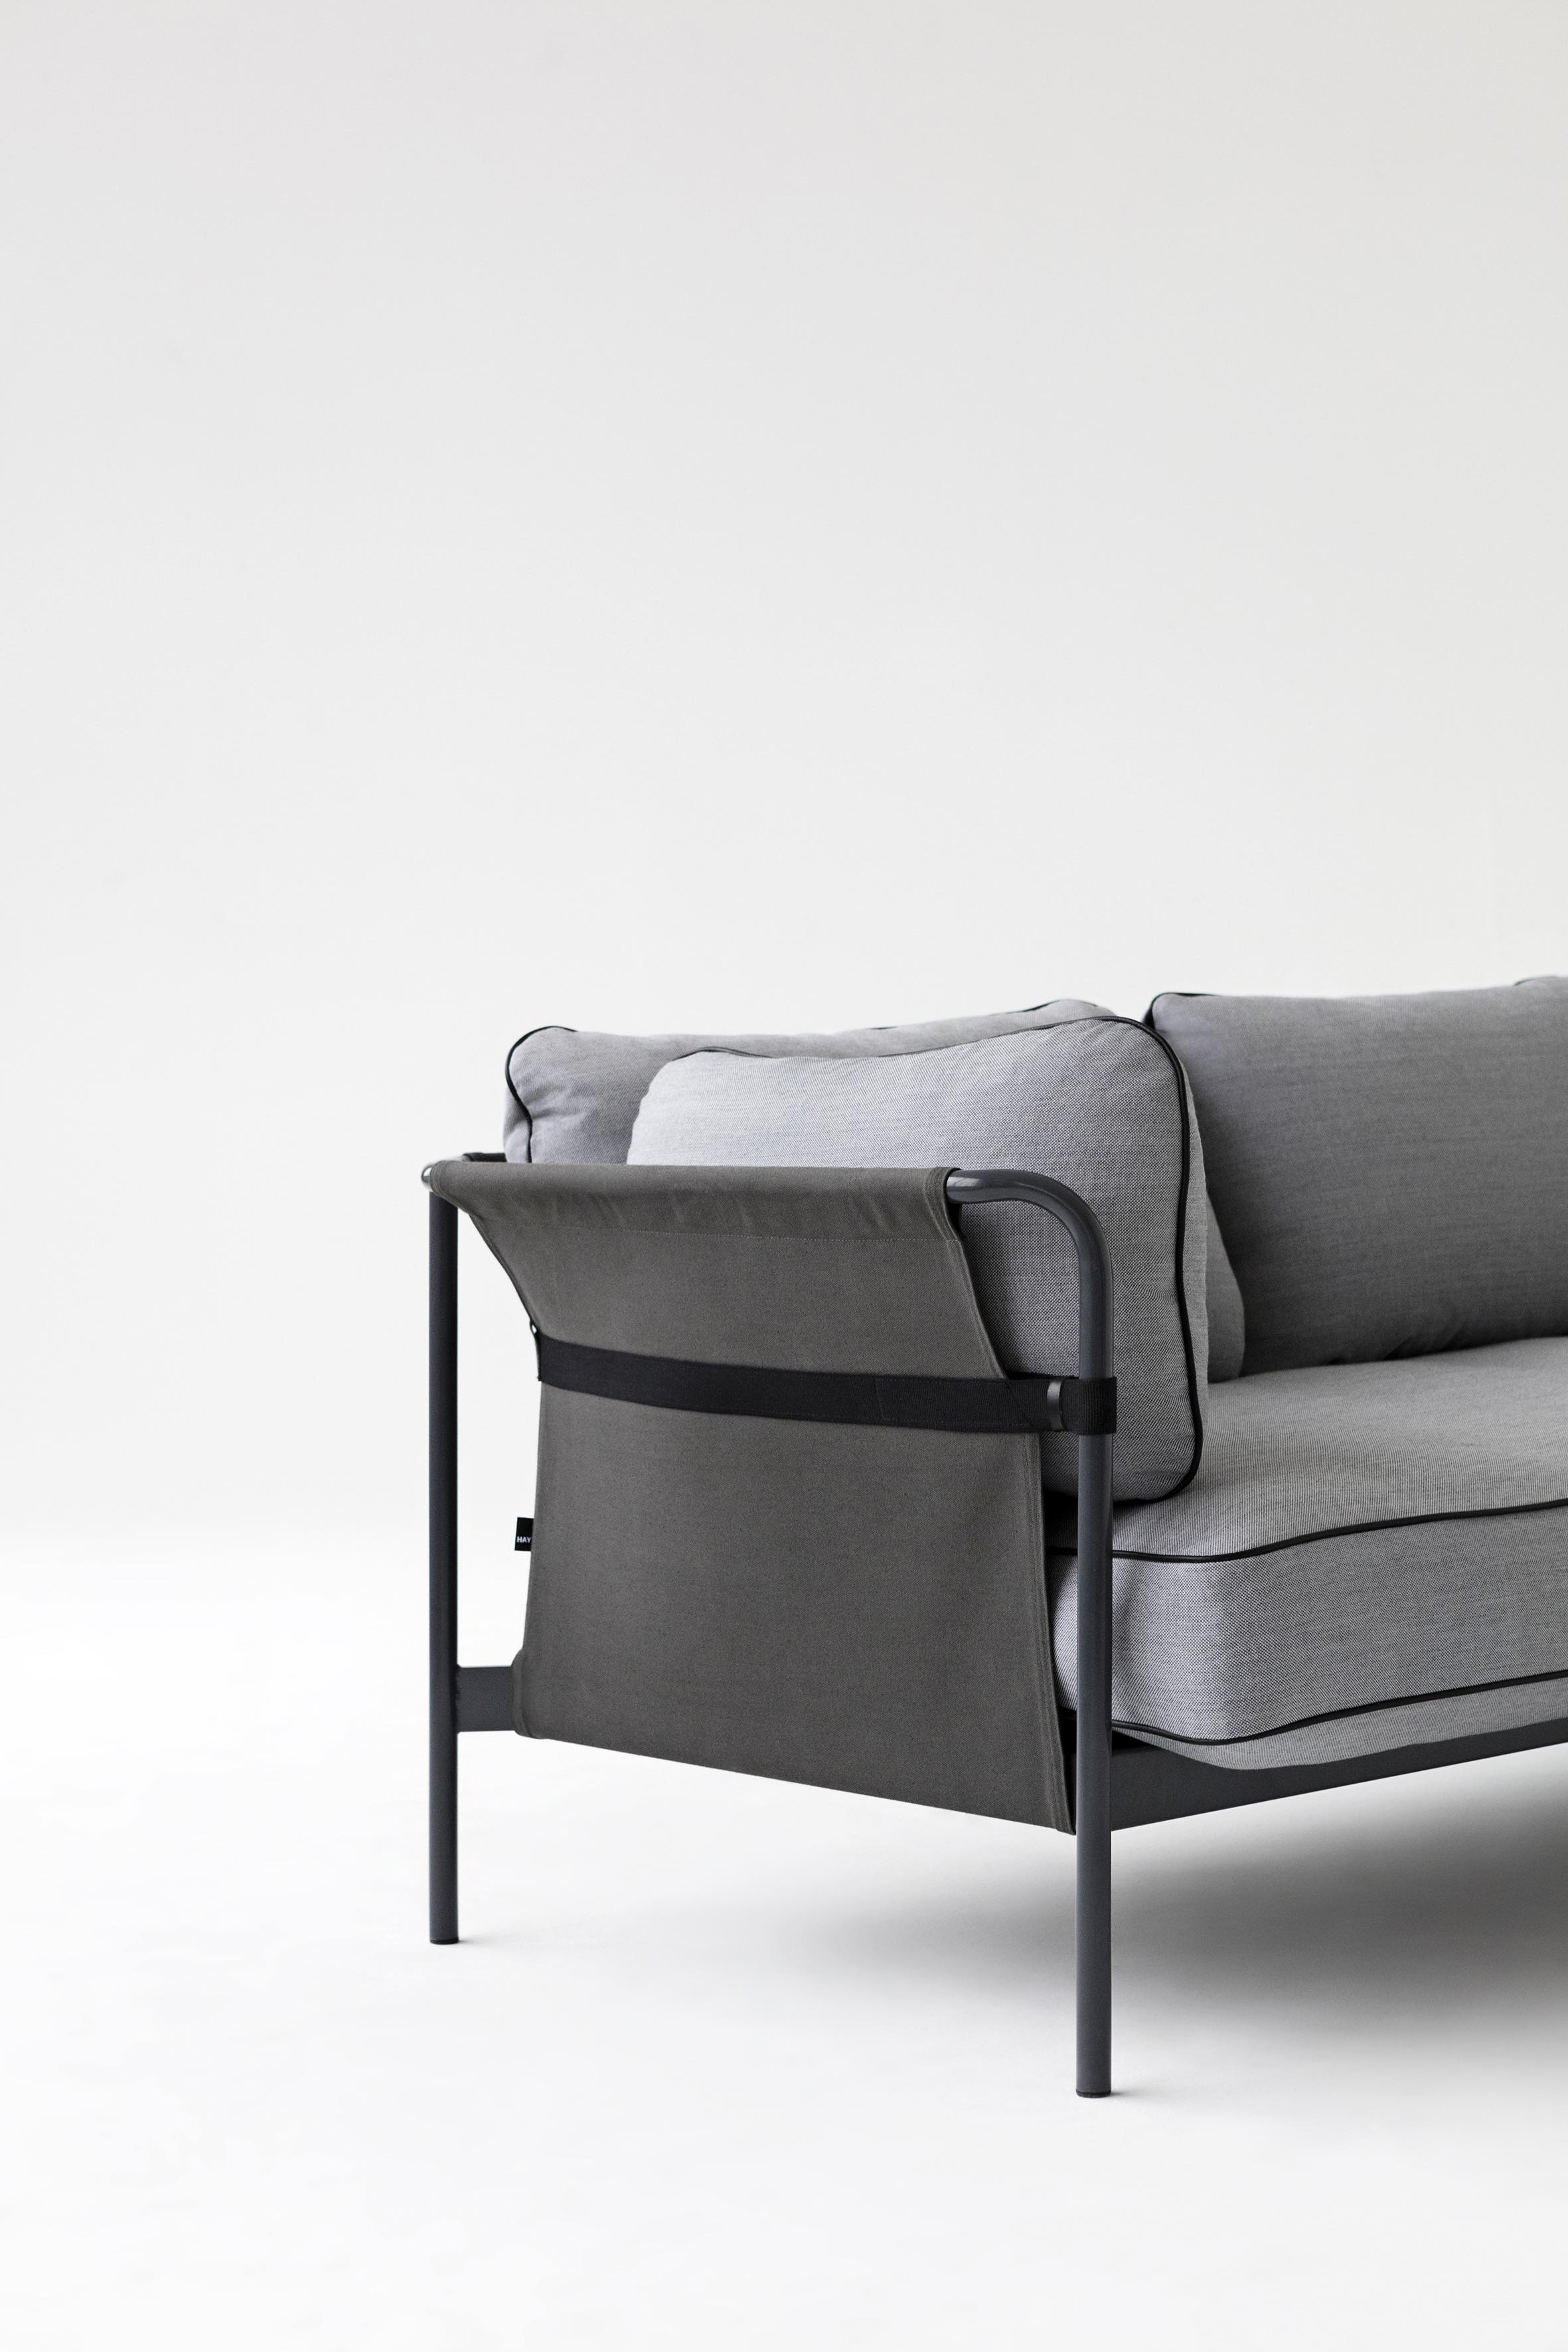 HAY revolutioniert Sofas mit dem neuen Sofa CAN by Design Bestseller_3